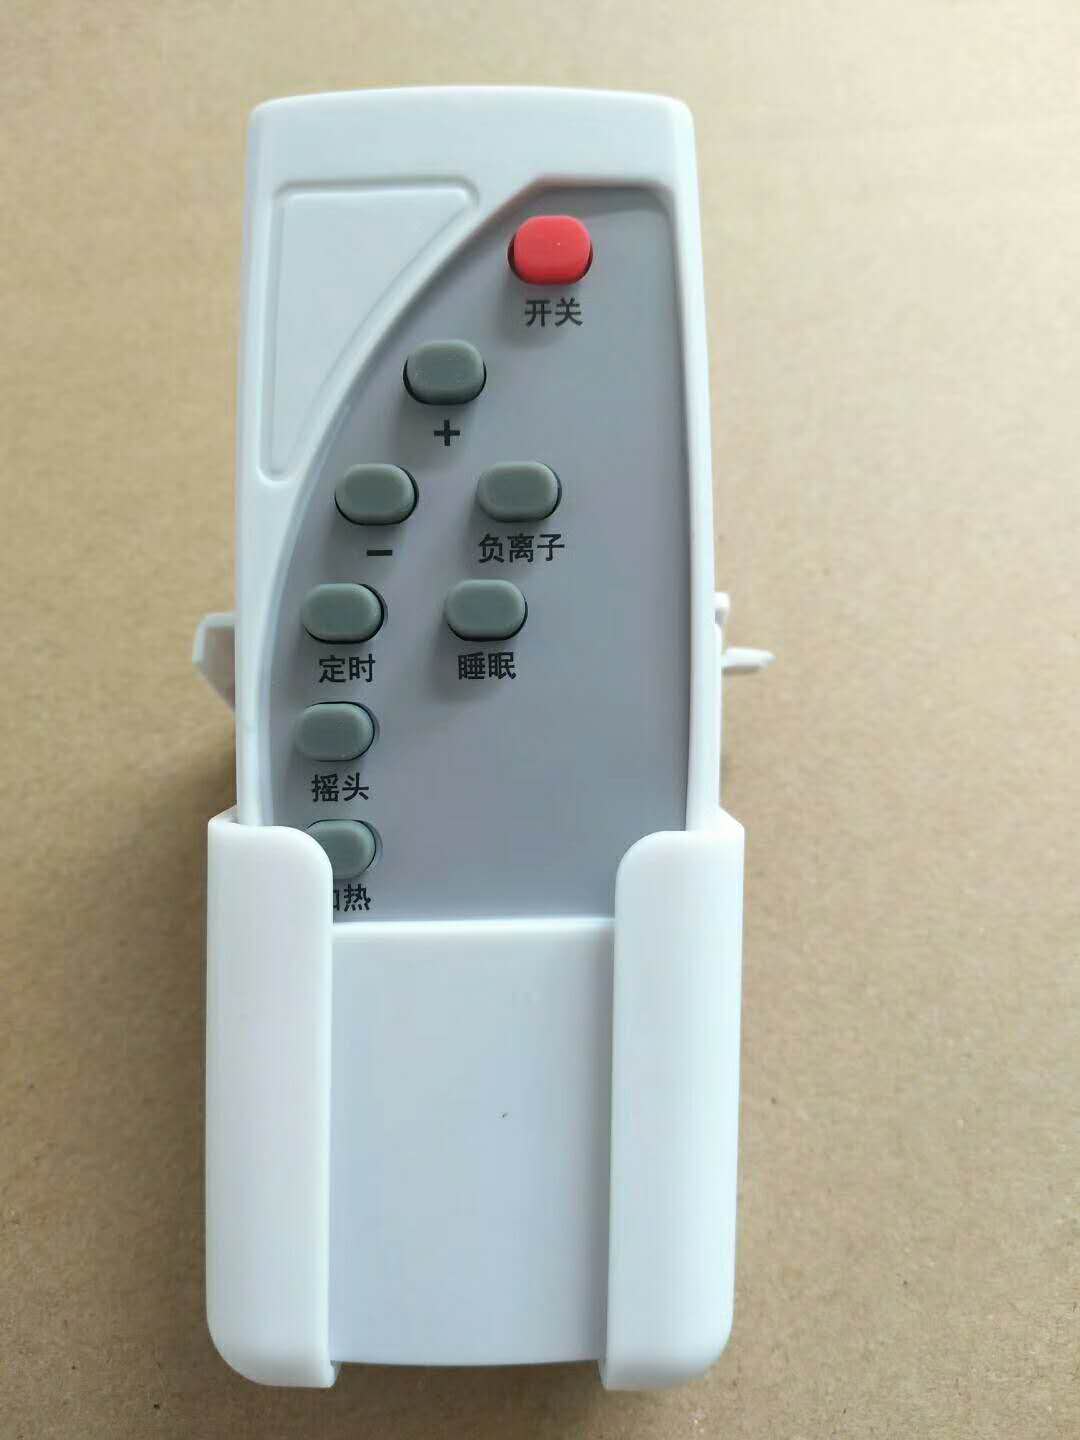 磁能热水器遥控器 4-8键遥控器 红外遥控器(图2)